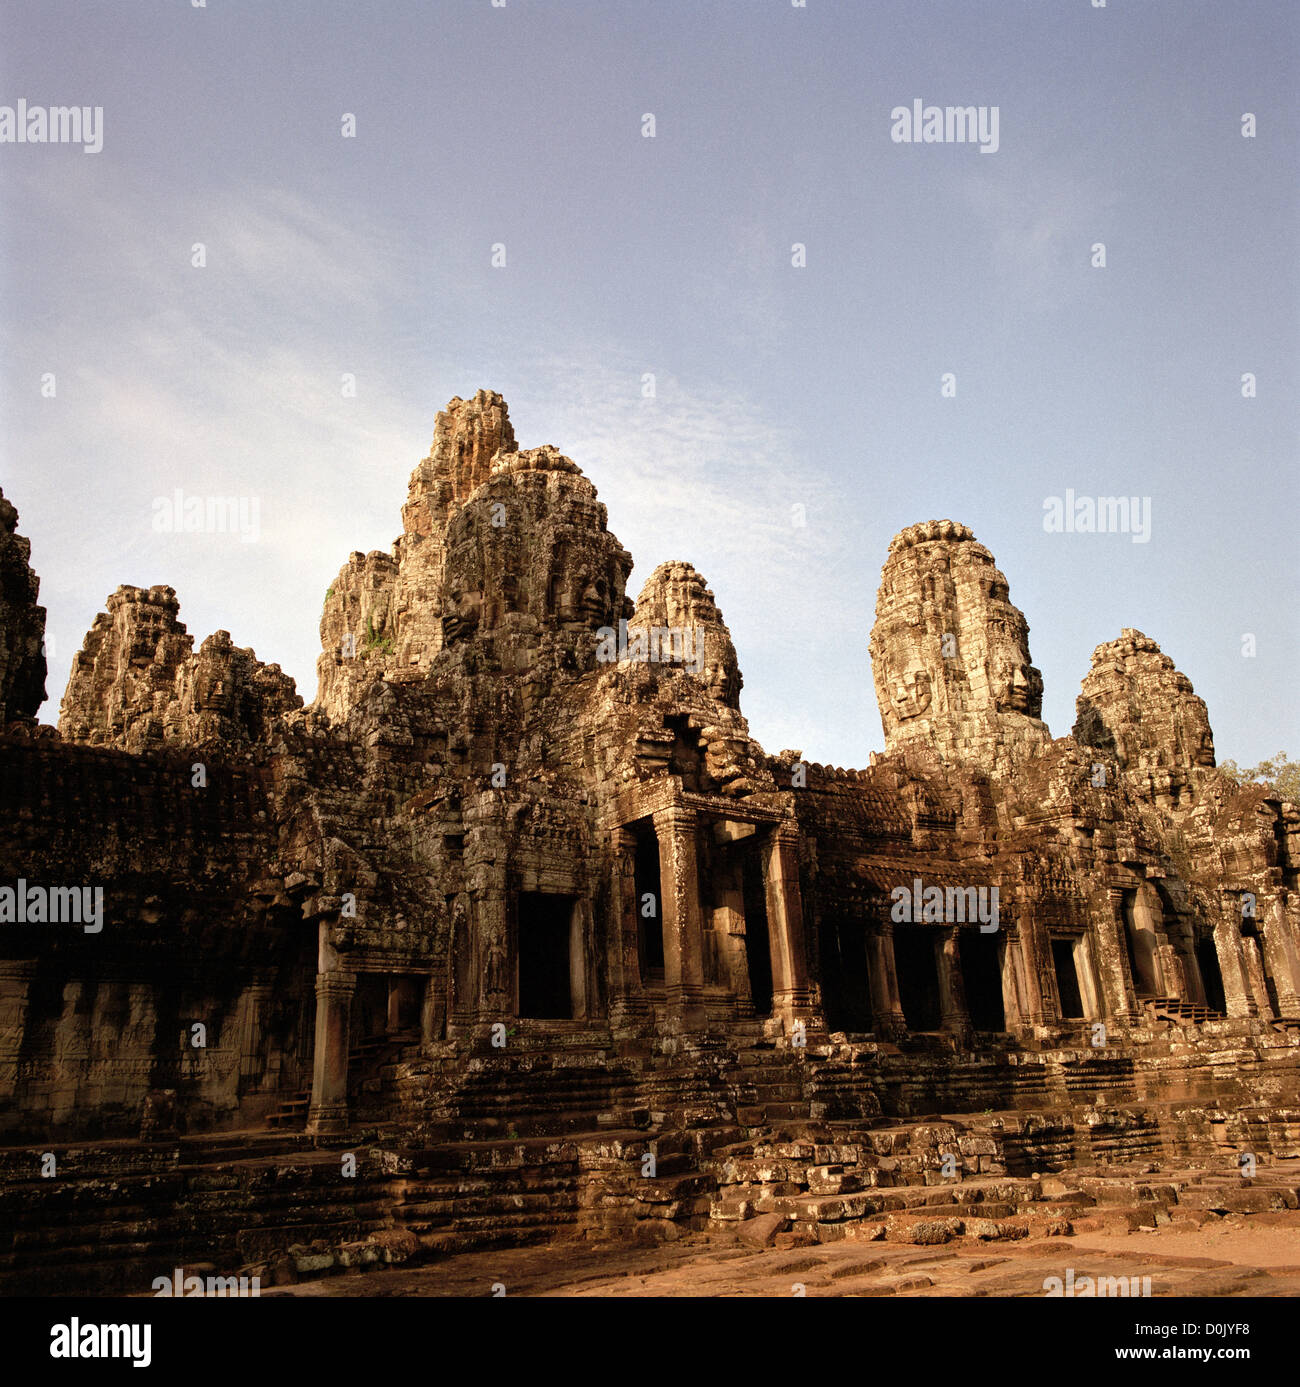 Dans la jungle est l'architecture khmère du Bayon d'Angkor Thom dans les Temples d'Angkor au Cambodge en Asie du sud-est. Histoire du billet Banque D'Images